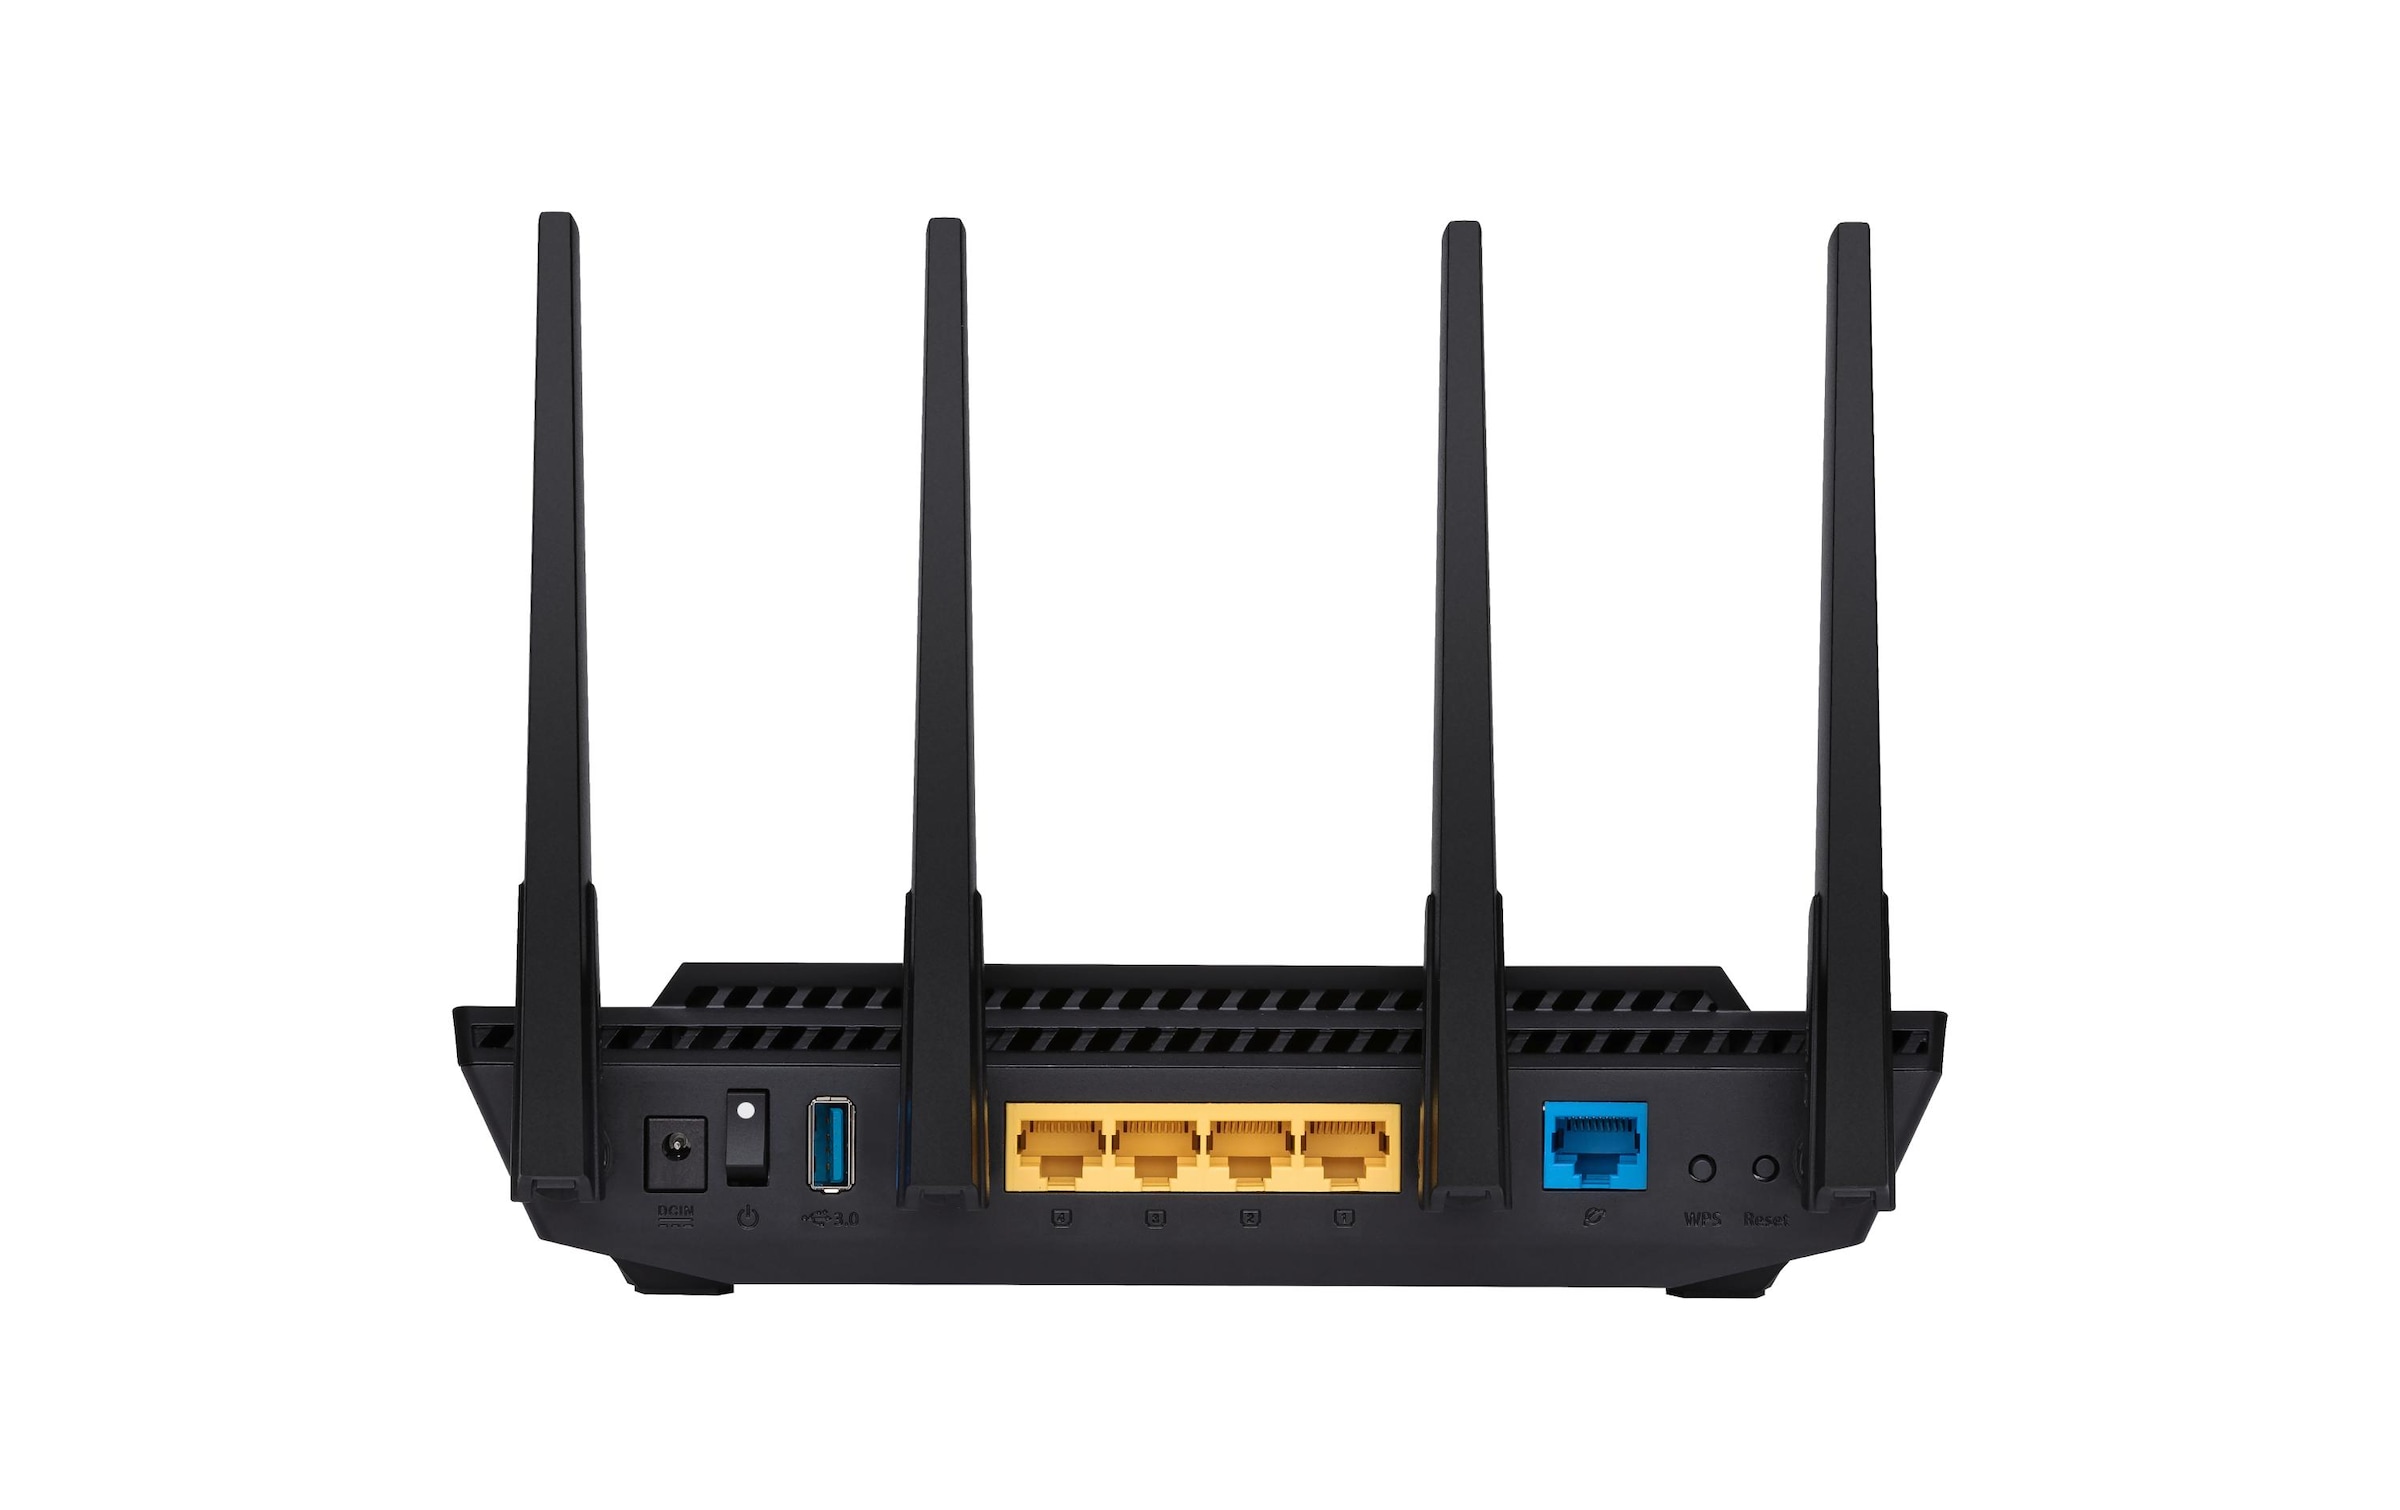 Asus WLAN-Router »Dual-Band WiFi RT-AX58U WiFi 6«